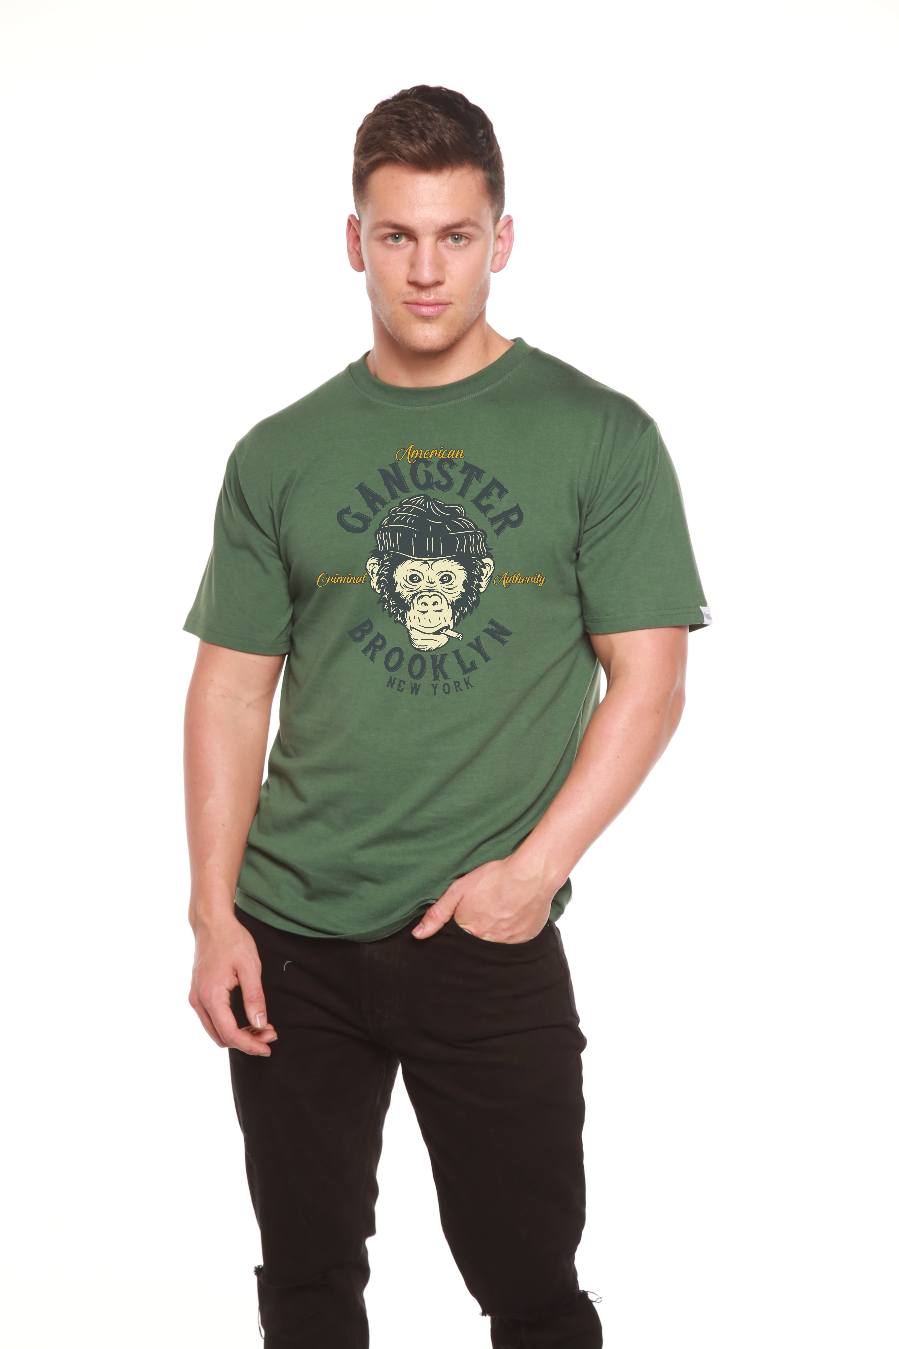 Gangster Brooklyn Men's Bamboo Viscose/Organic Cotton Short Sleeve T-Shirt - Spun Bamboo